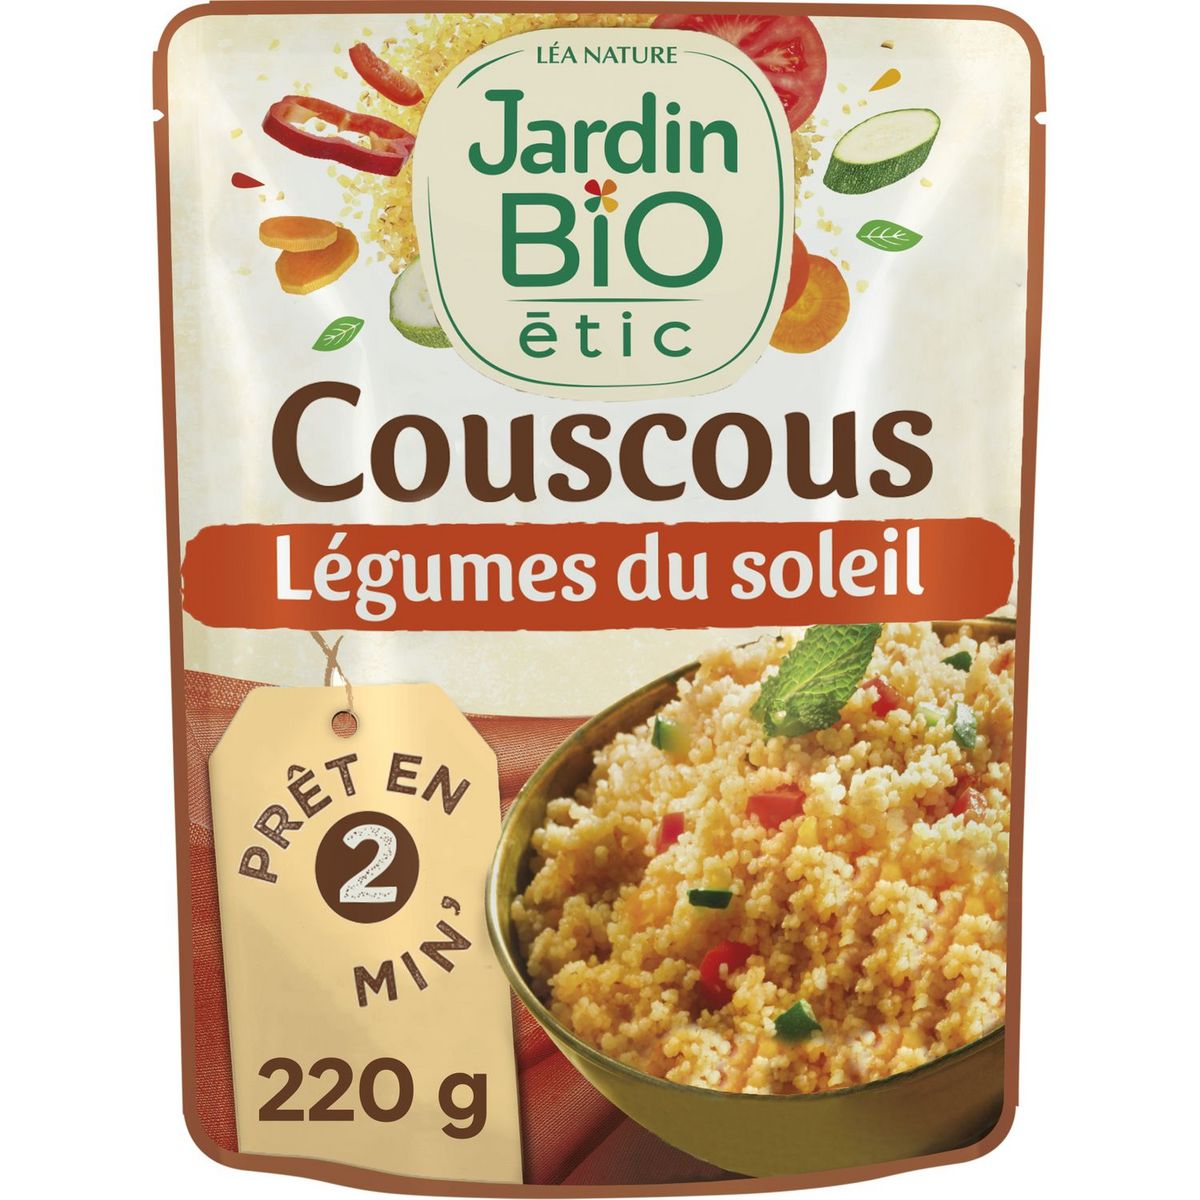 JARDIN BIO ETIC Couscous aux légumes du soleil sachet express 1 personne 220g